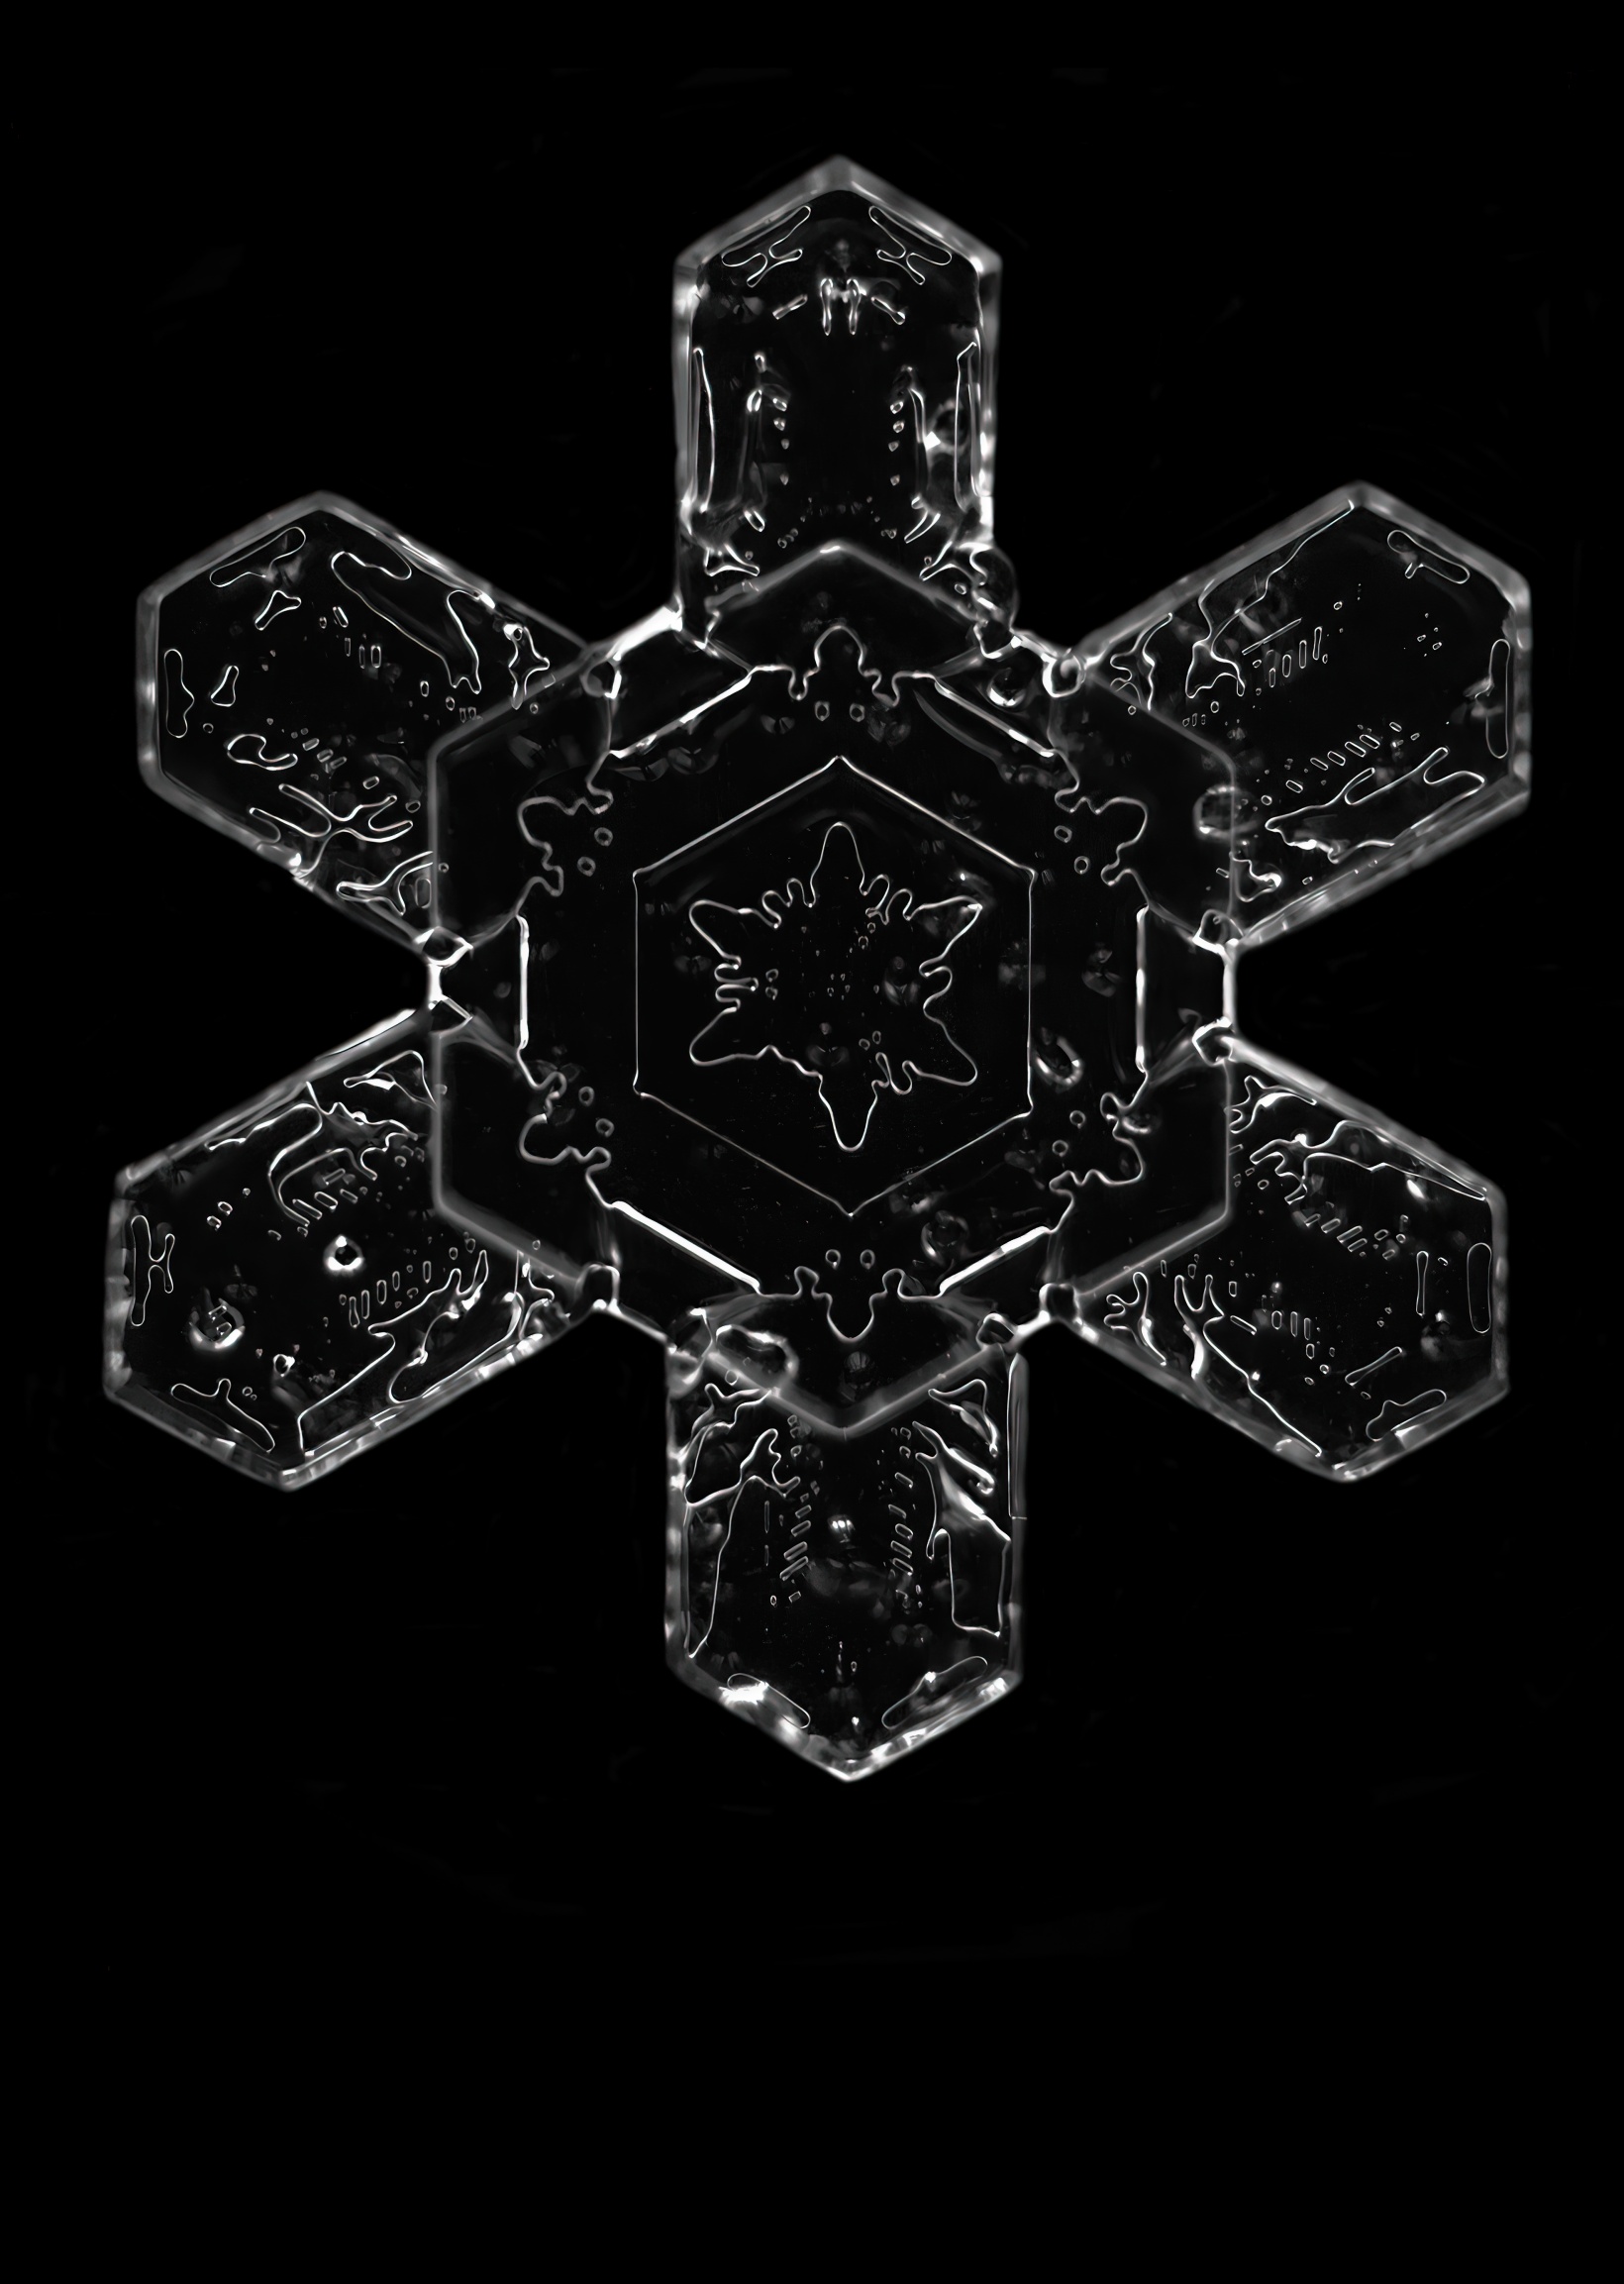 Krystal sněhové vločky zobrazený technikou osvětlení v tmavém poli